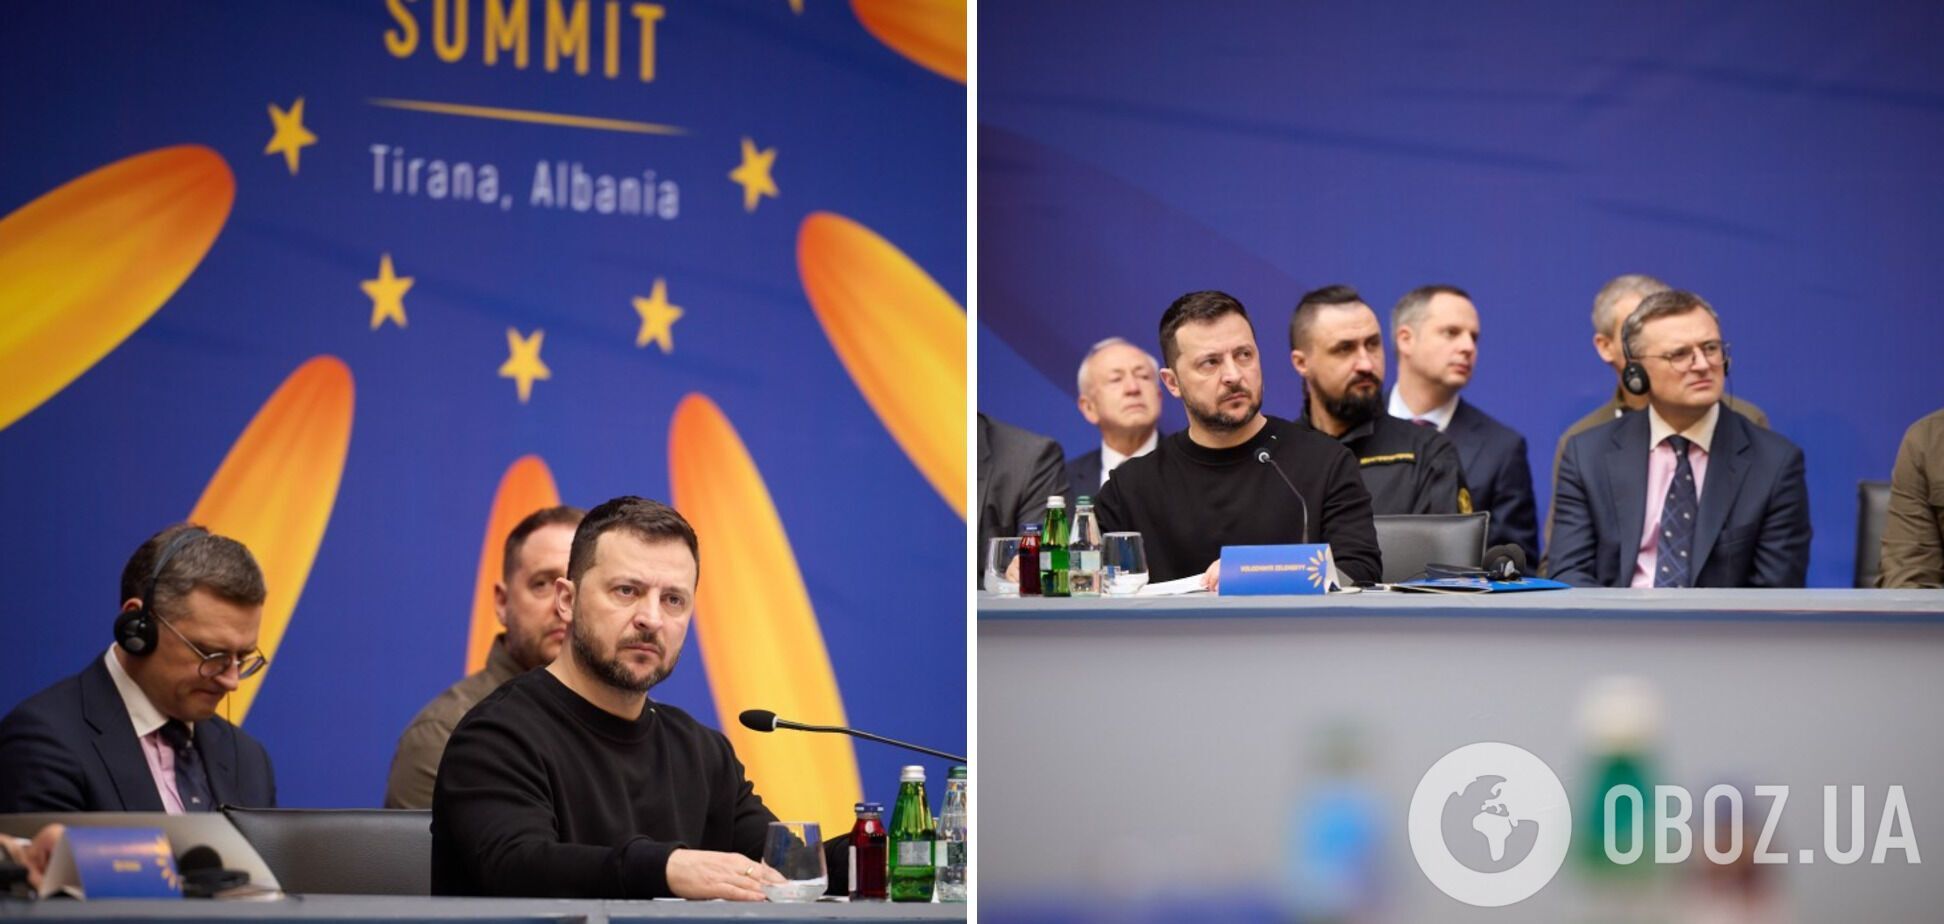 'Зараз час, коли визначається шлях Європи': Зеленський виступив на відкритті саміту в Тирані. Відео